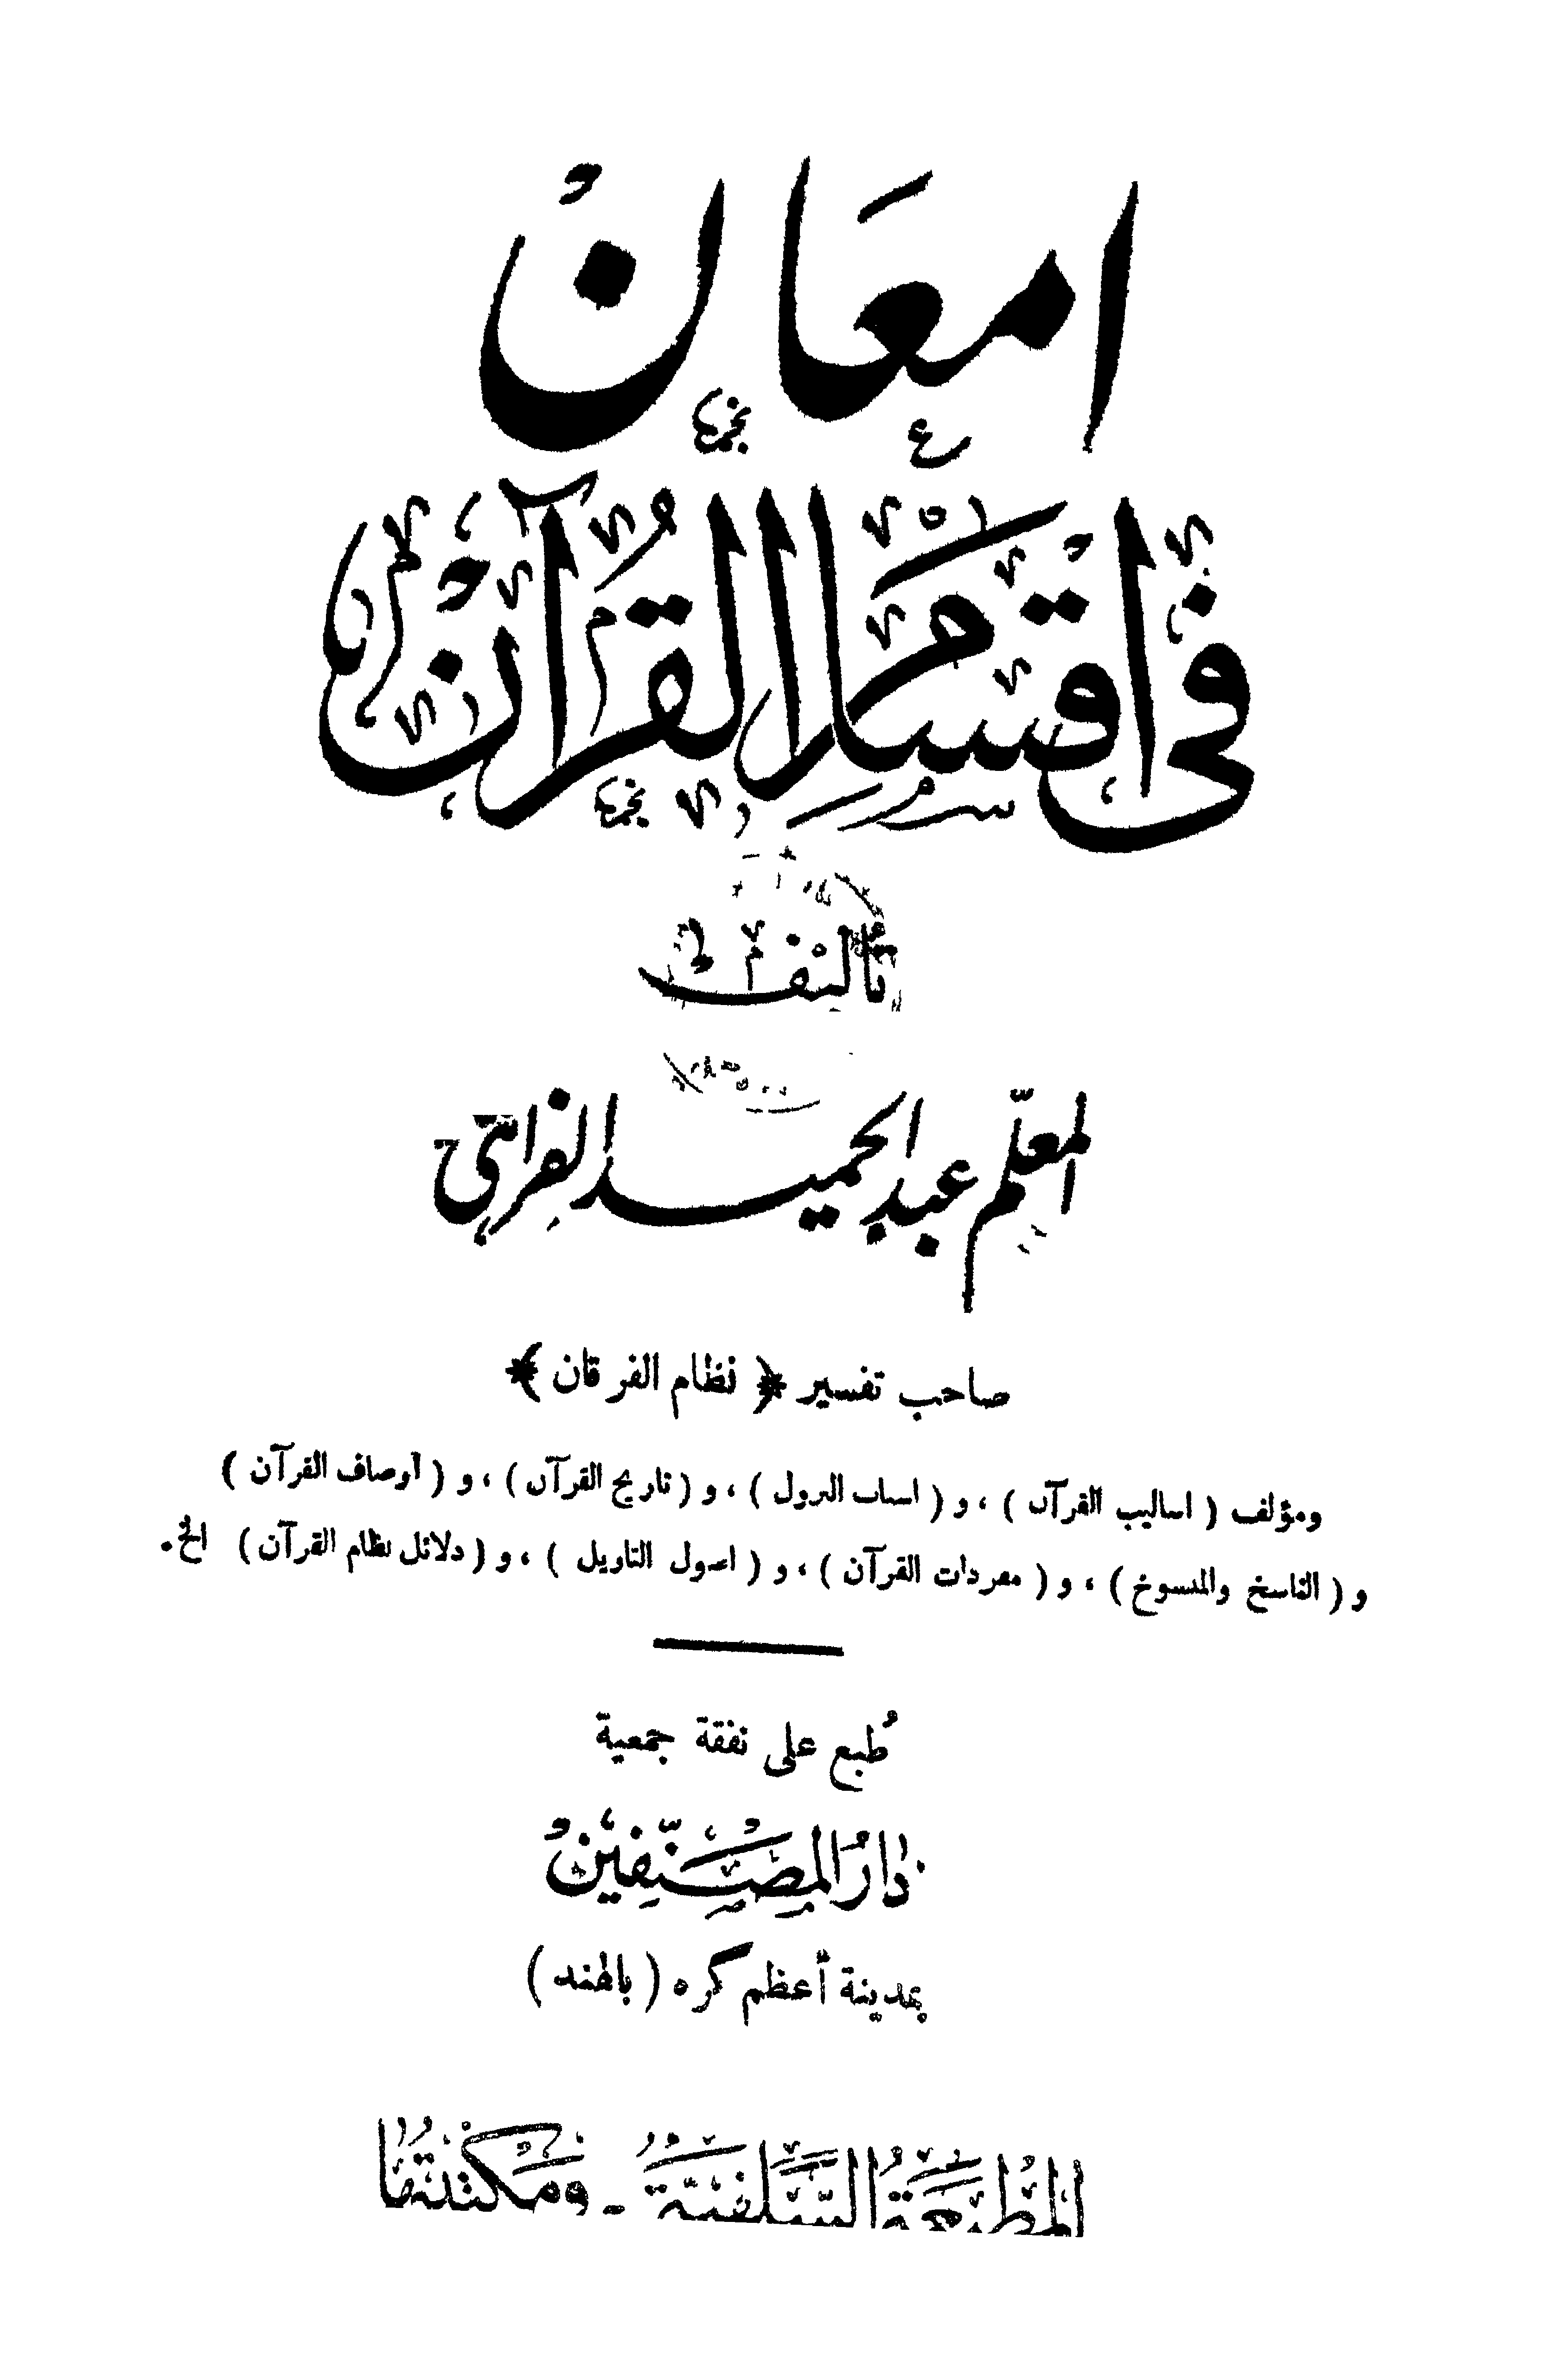 تحميل كتاب إمعان في أقسام القرآن للمؤلف: الشيخ عبد الحميد الفراهي الهندي (ت 1349)